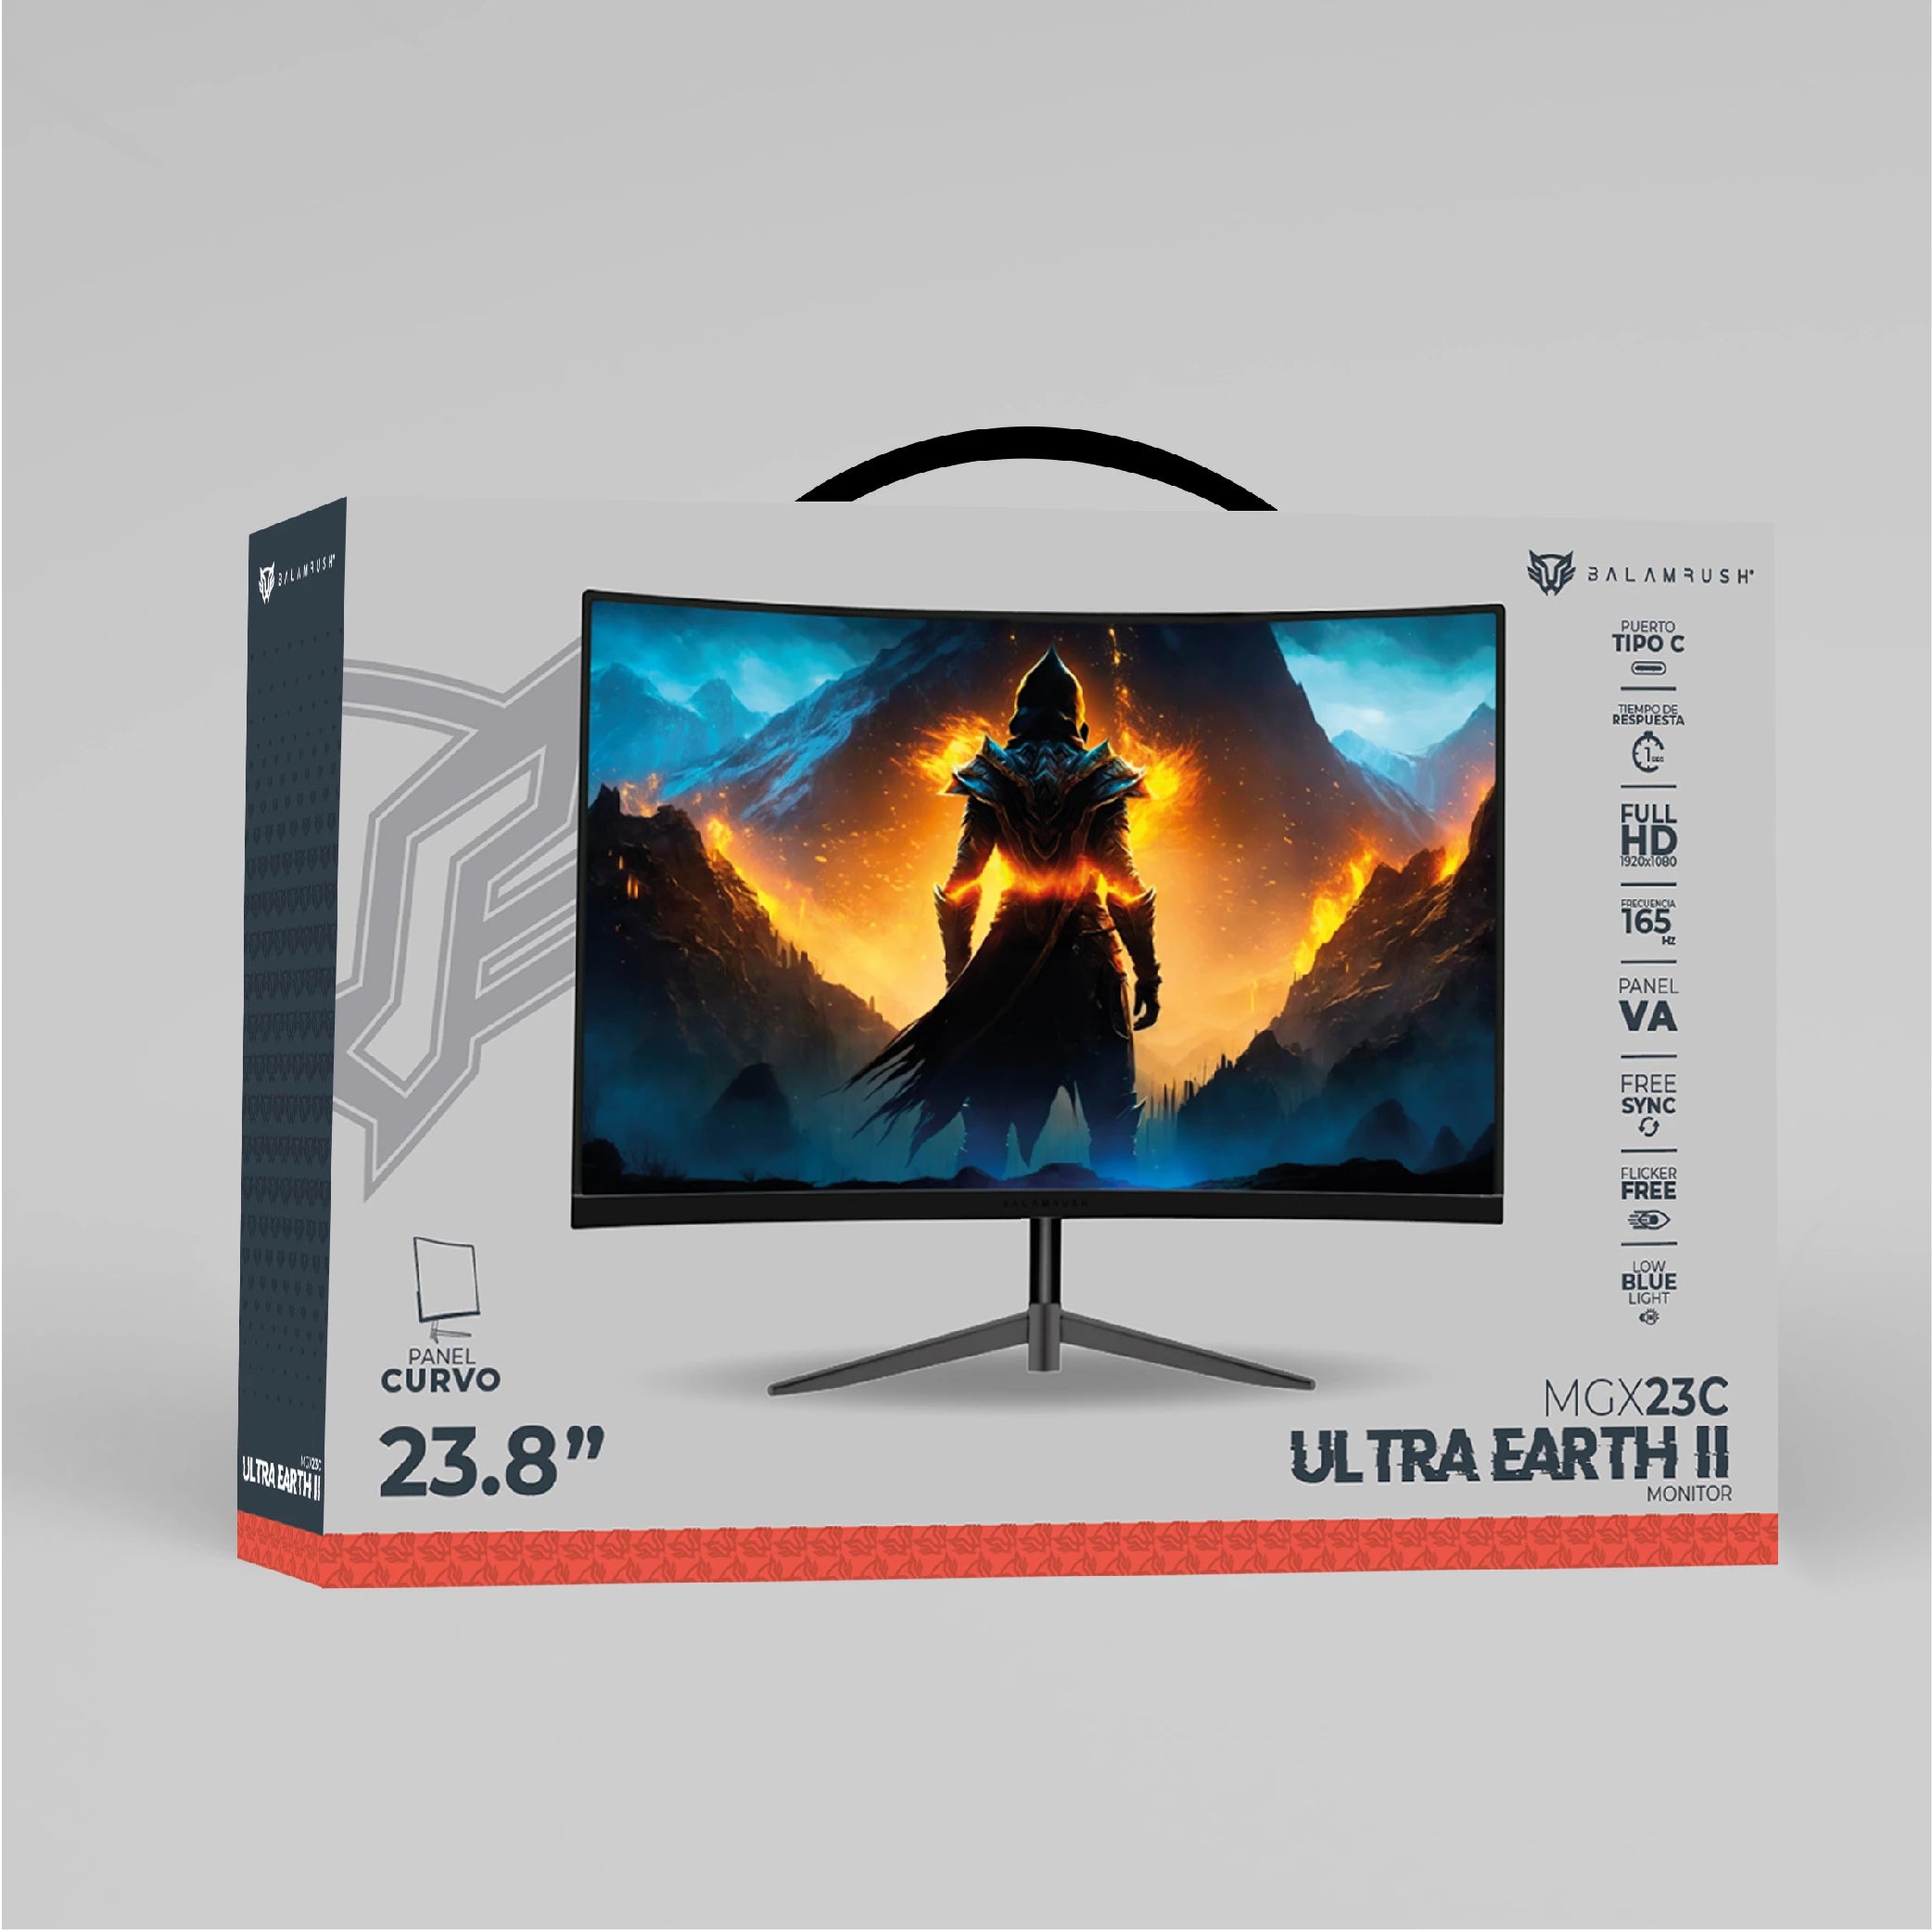 Monitor Gamer Curvo 23.8" Ultra Earth II MGX23C VA + 165Hz + 1ms + Full HD 1080p/HDMI + DP + TYPE-C 15W + 3.5mm + VESA 100 x 100 mm/Negro